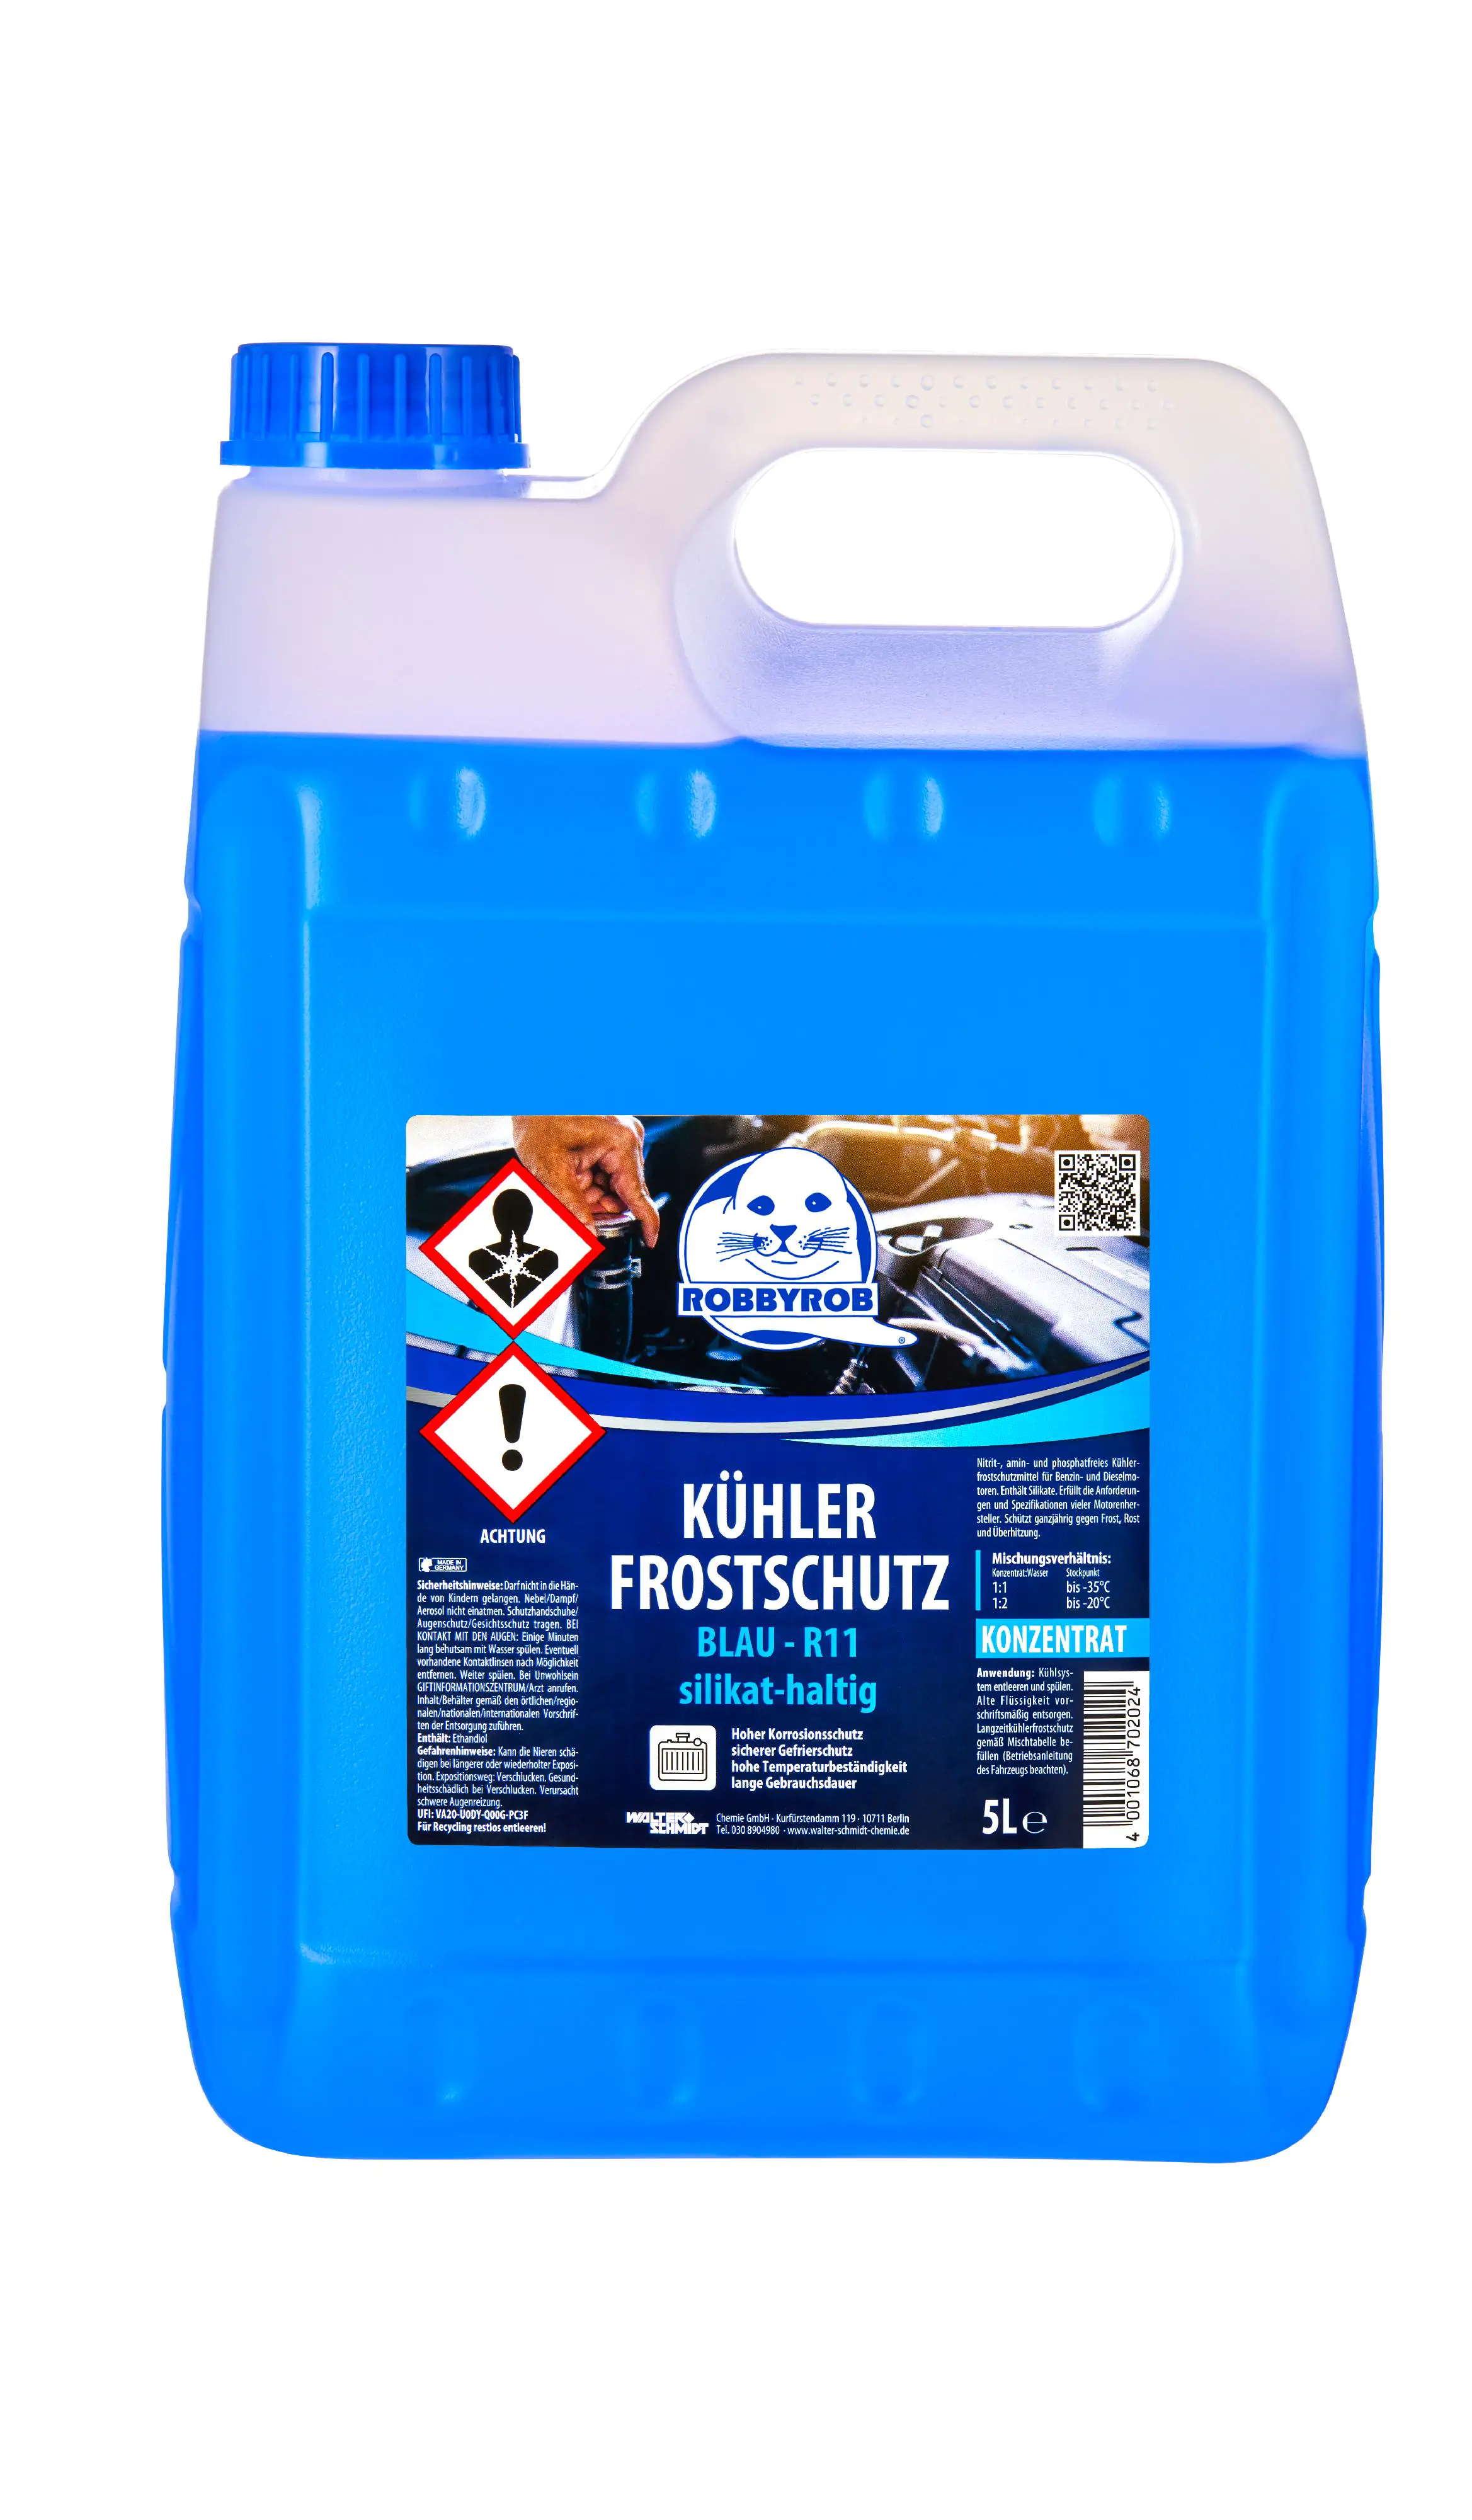 Kühlerfrostschutz blau 5 Liter online kaufen - im van beusekom Onlineshop